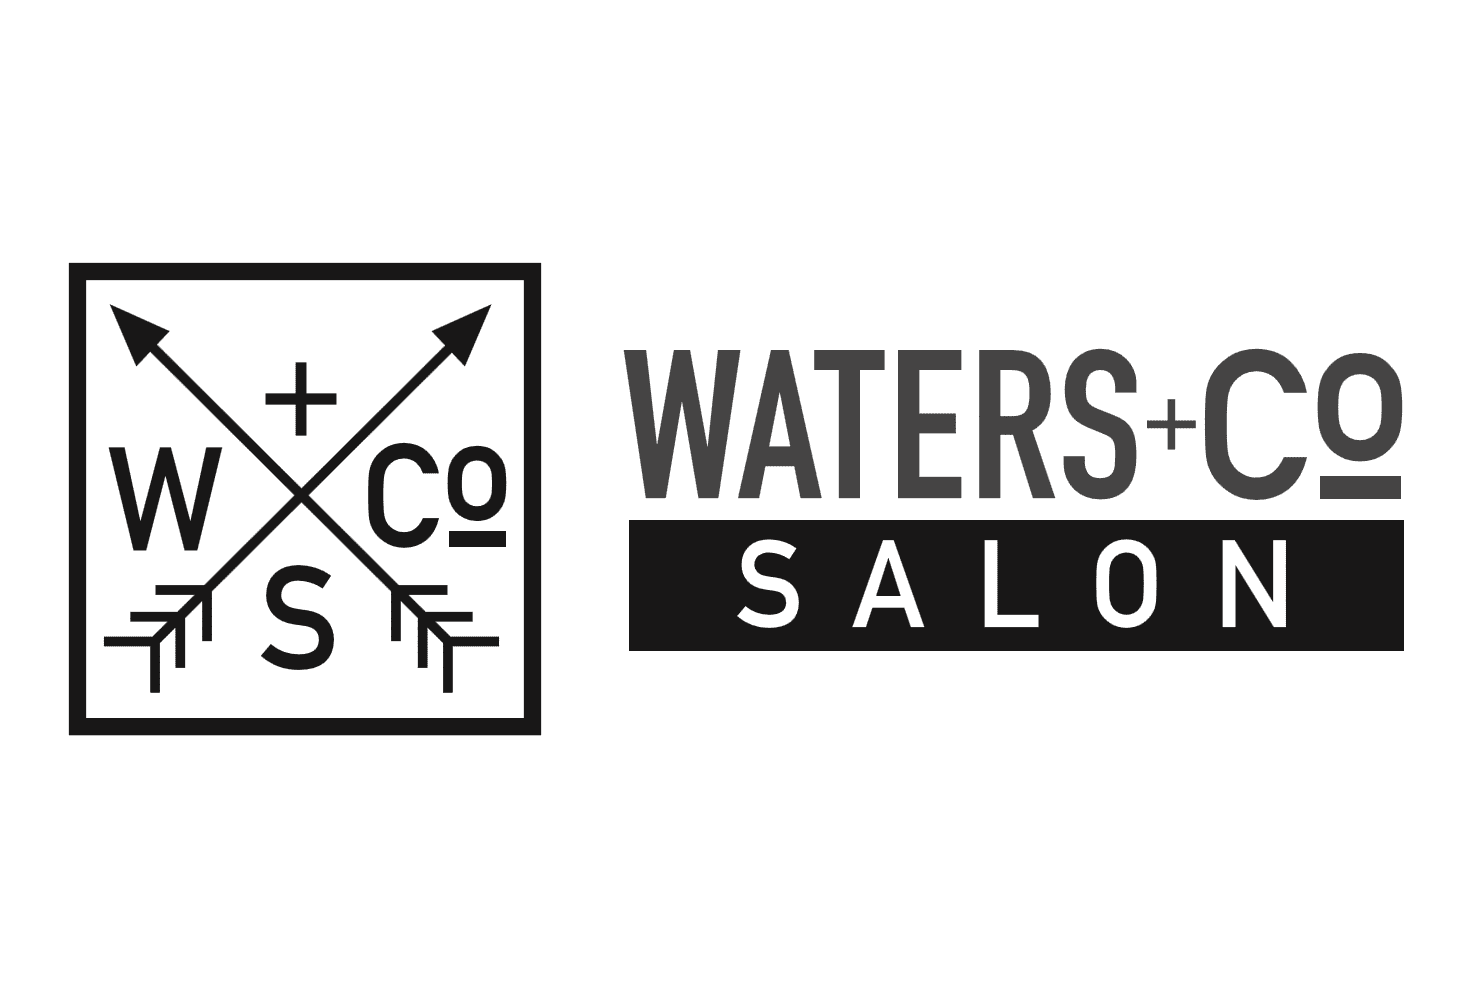 Waters & Co Salon